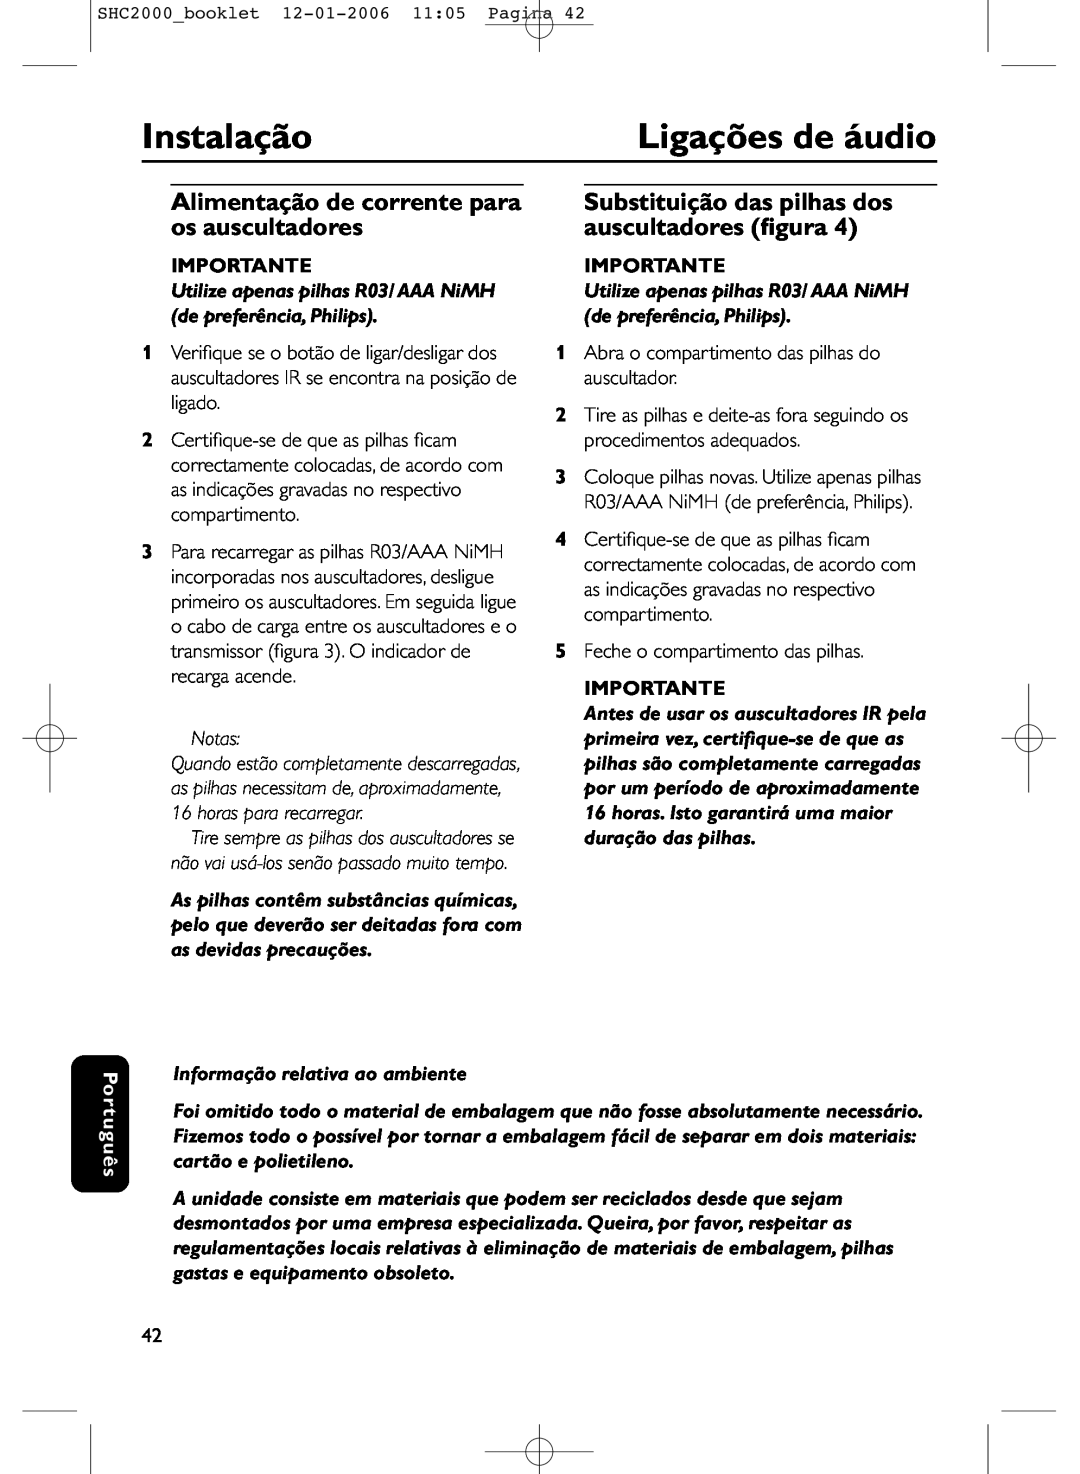 Philips SHC2000 manual Instalação, Ligações de áudio, Alimentação de corrente para os auscultadores, Importante, Português 